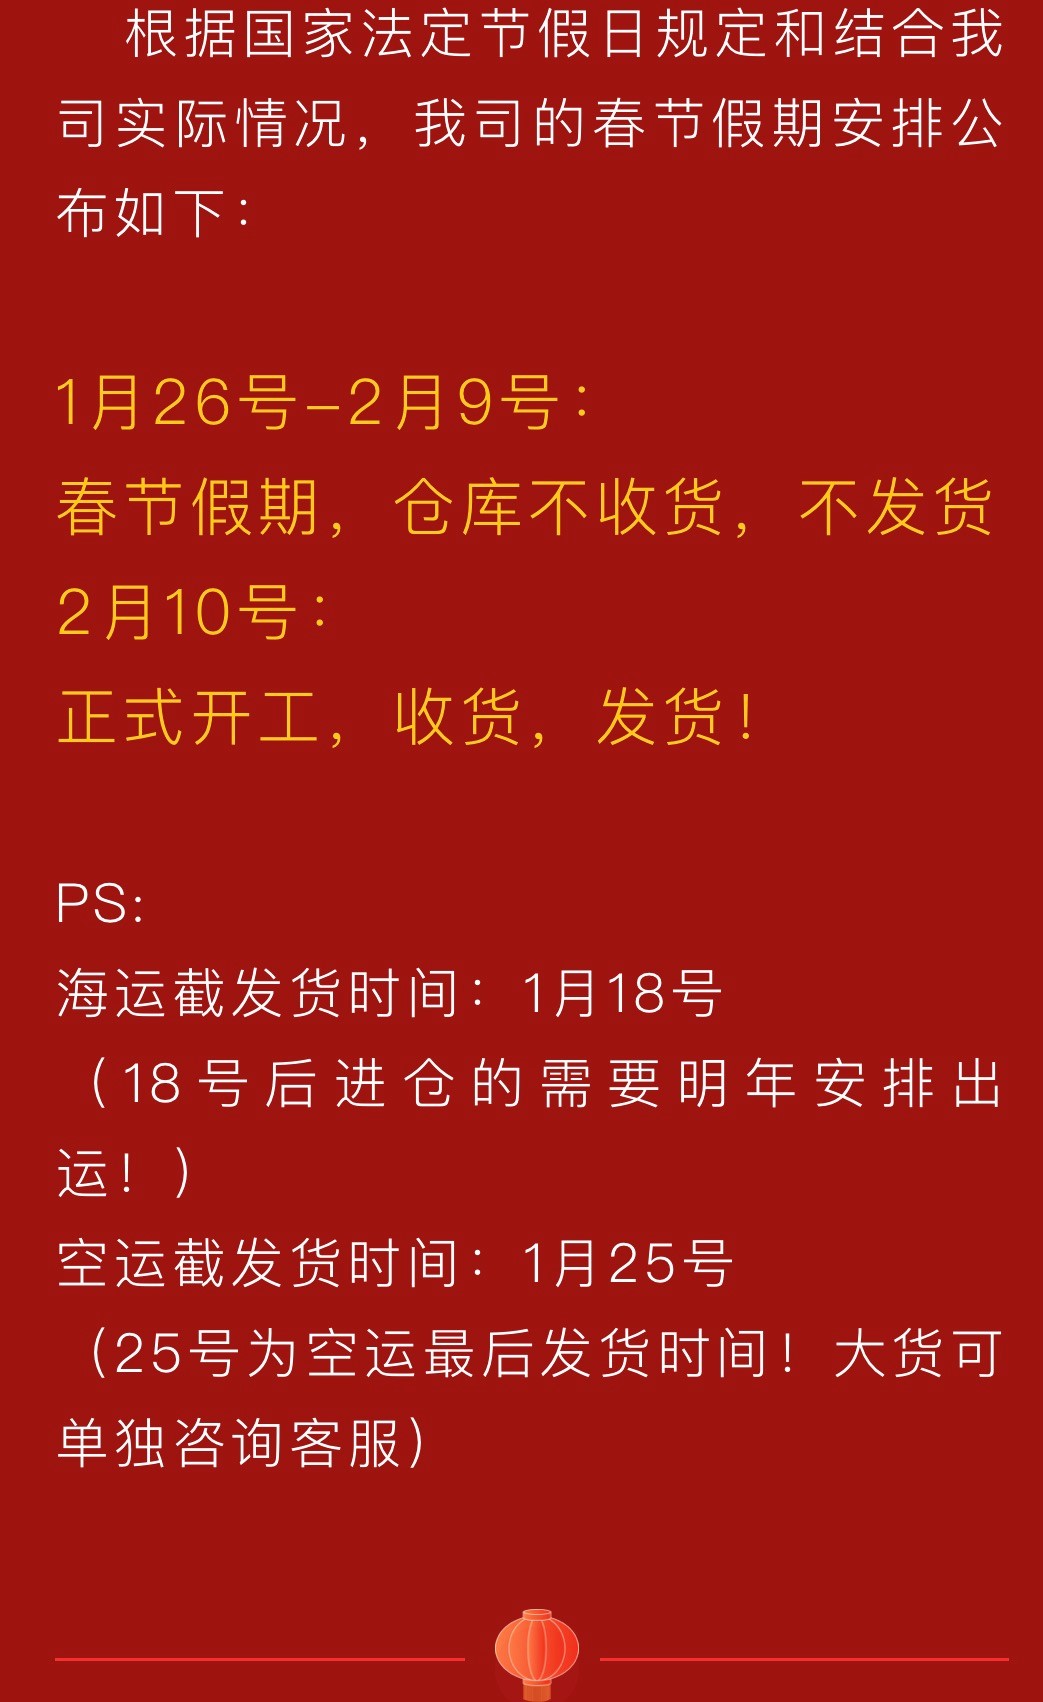 这家中国物流公司发出通知，他们将从1月26日到2月9日暂停营业。